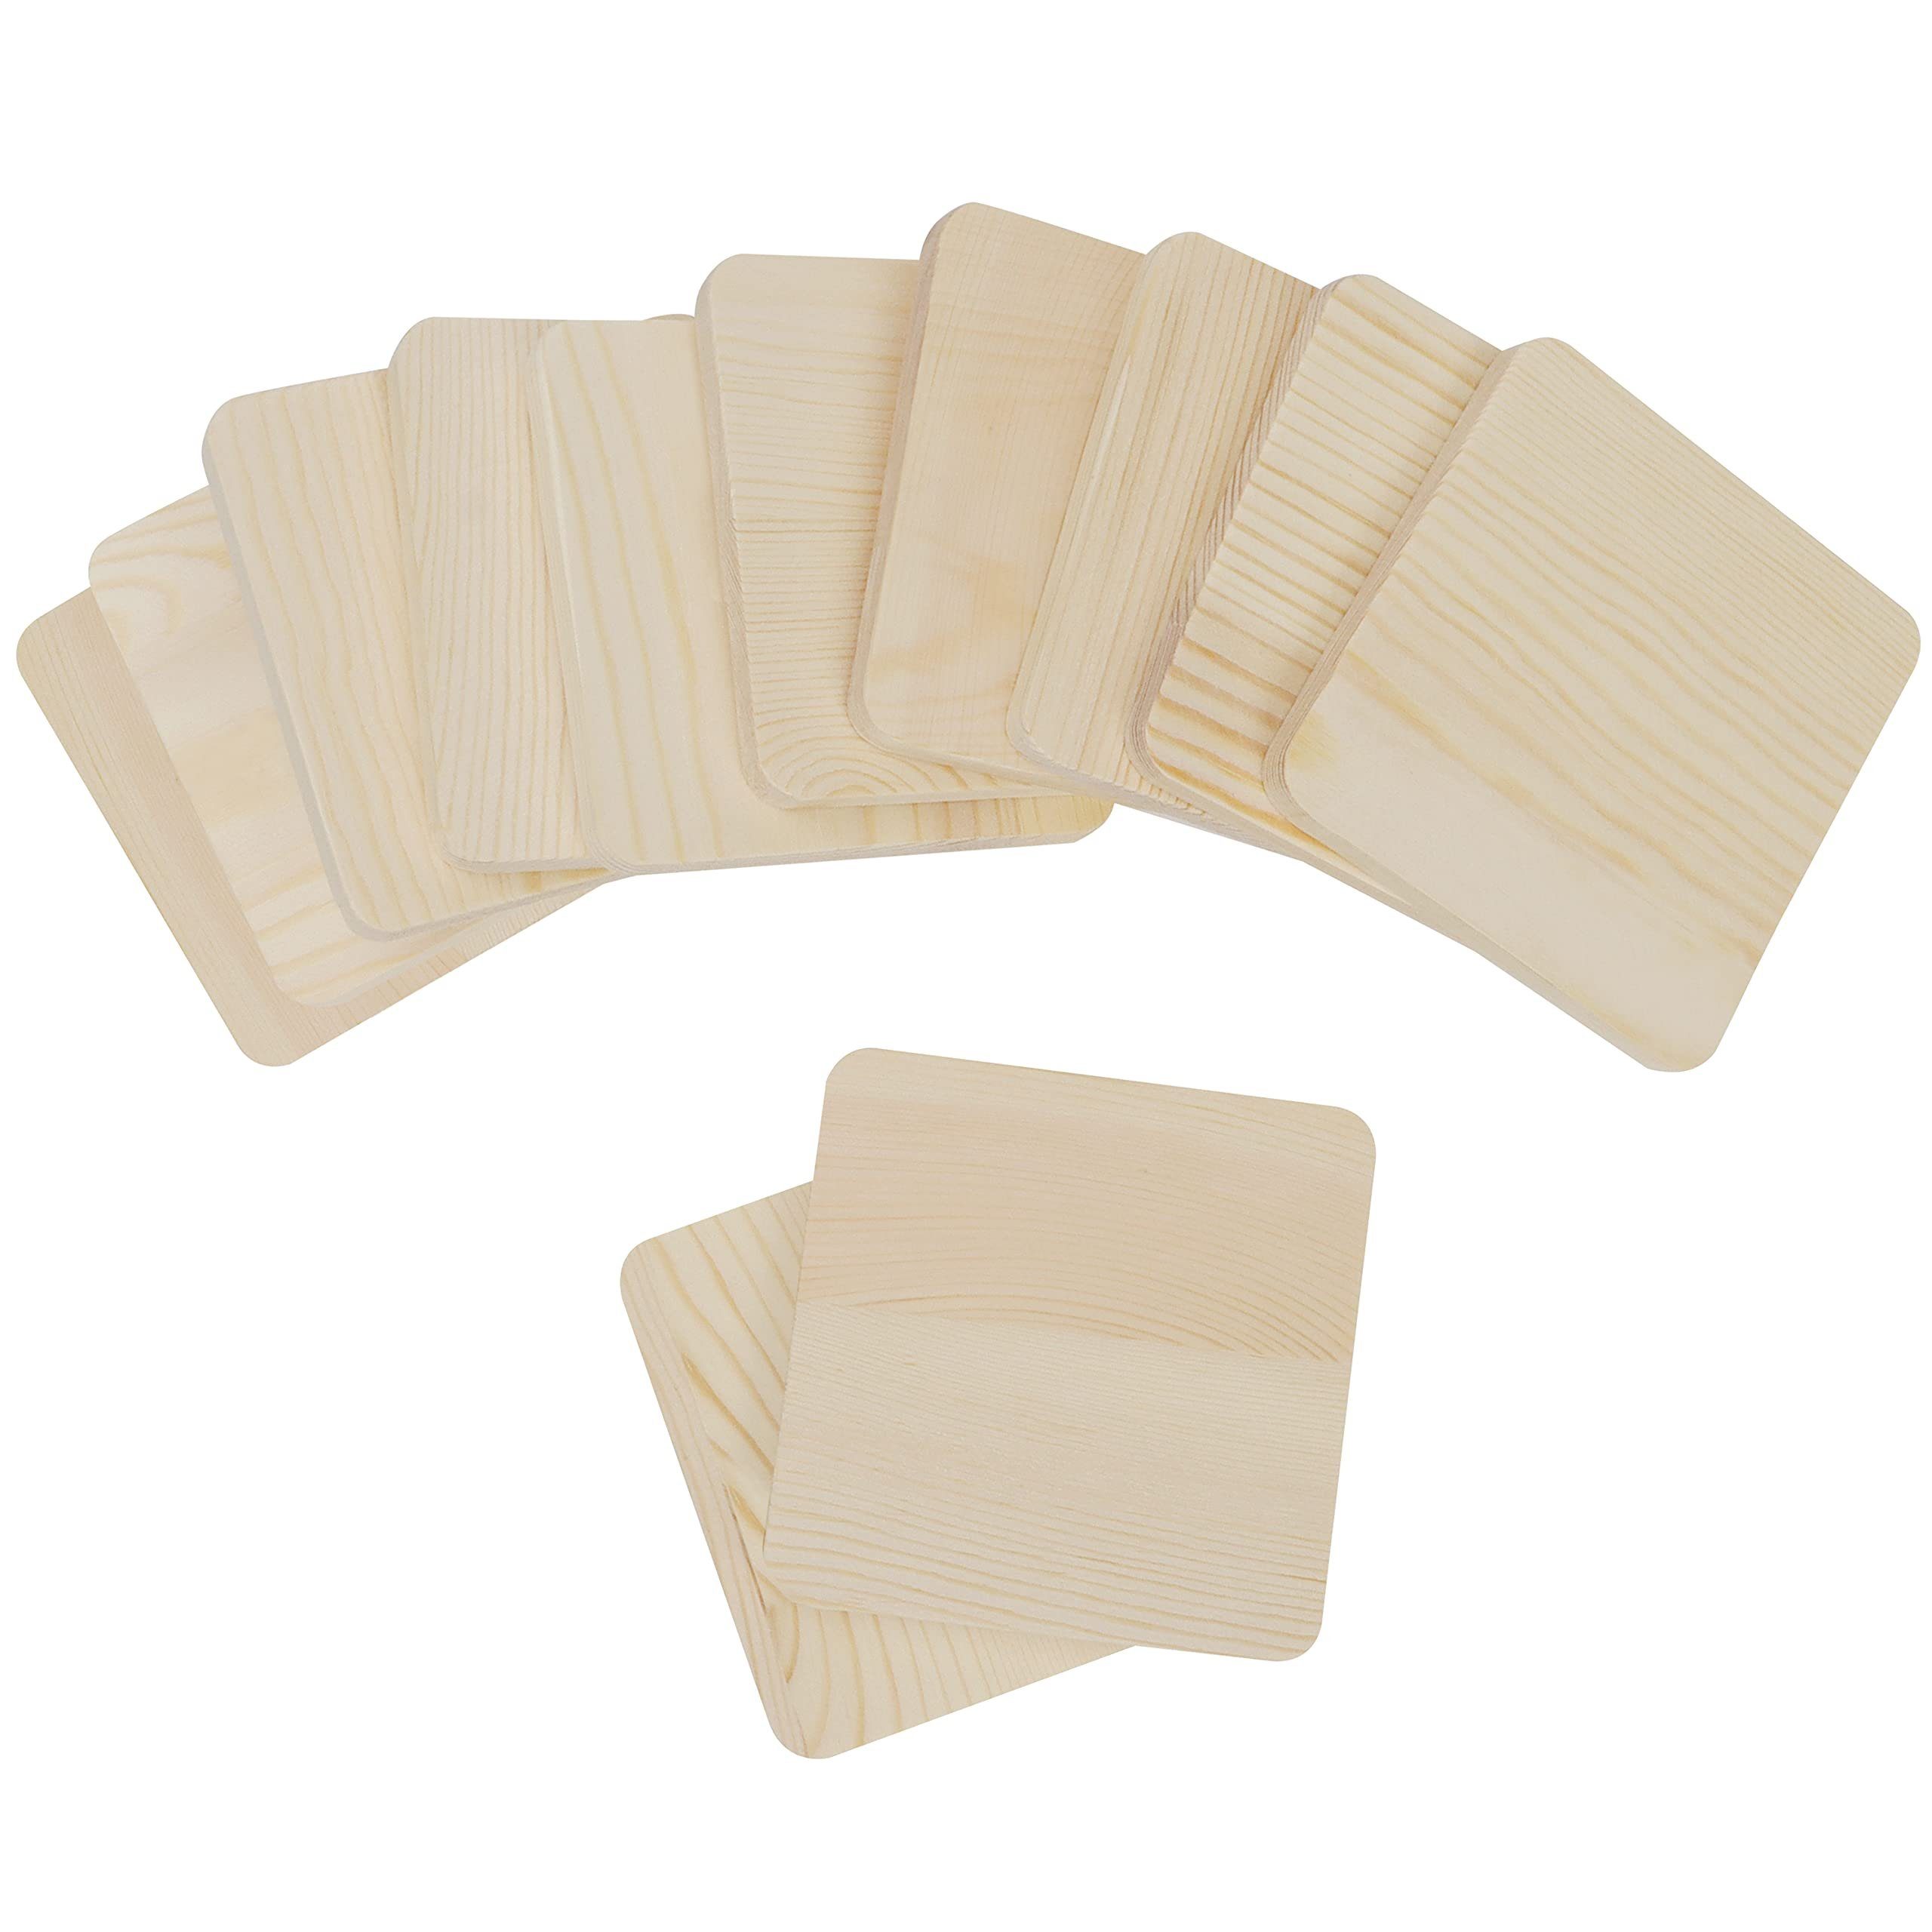 Belle (12-Pack) Wood 9,3x9,3cm, Vous zum Boards (12er-Pack) - 9.3x9.3cm DIY Selbermachen Holzplatten Getränkeuntersetzer -